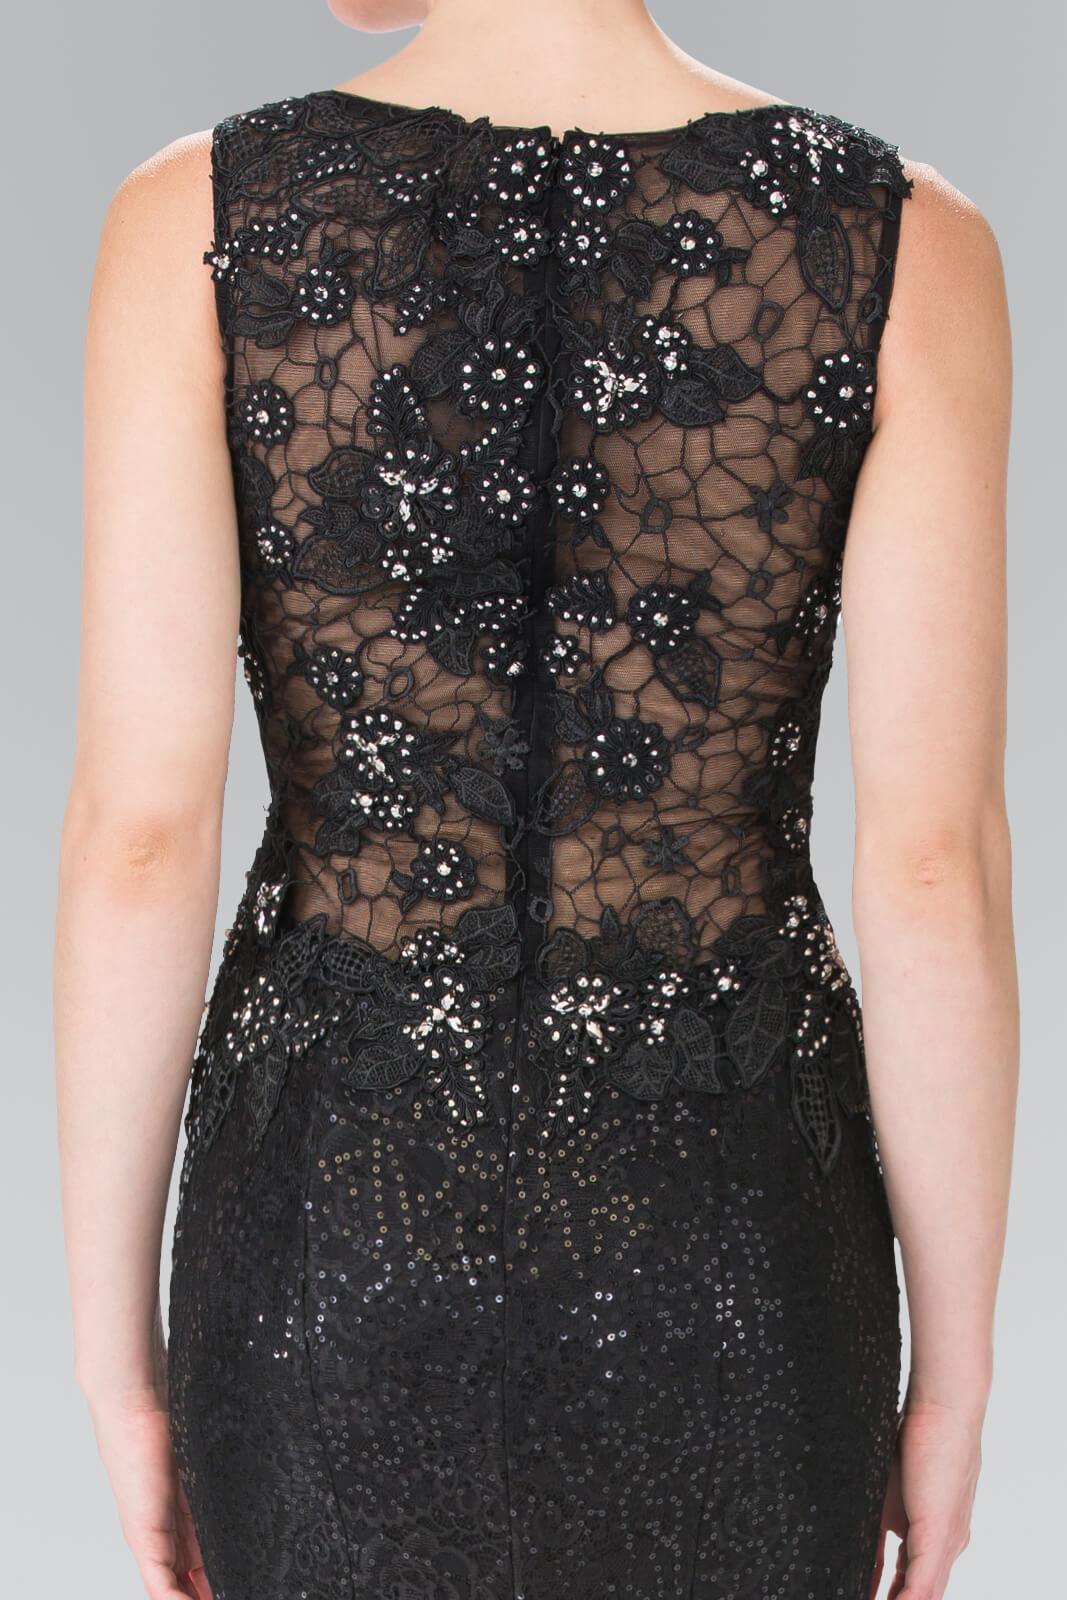 Prom Long Formal Dress Sequined Black Evening Gown - The Dress Outlet Elizabeth K